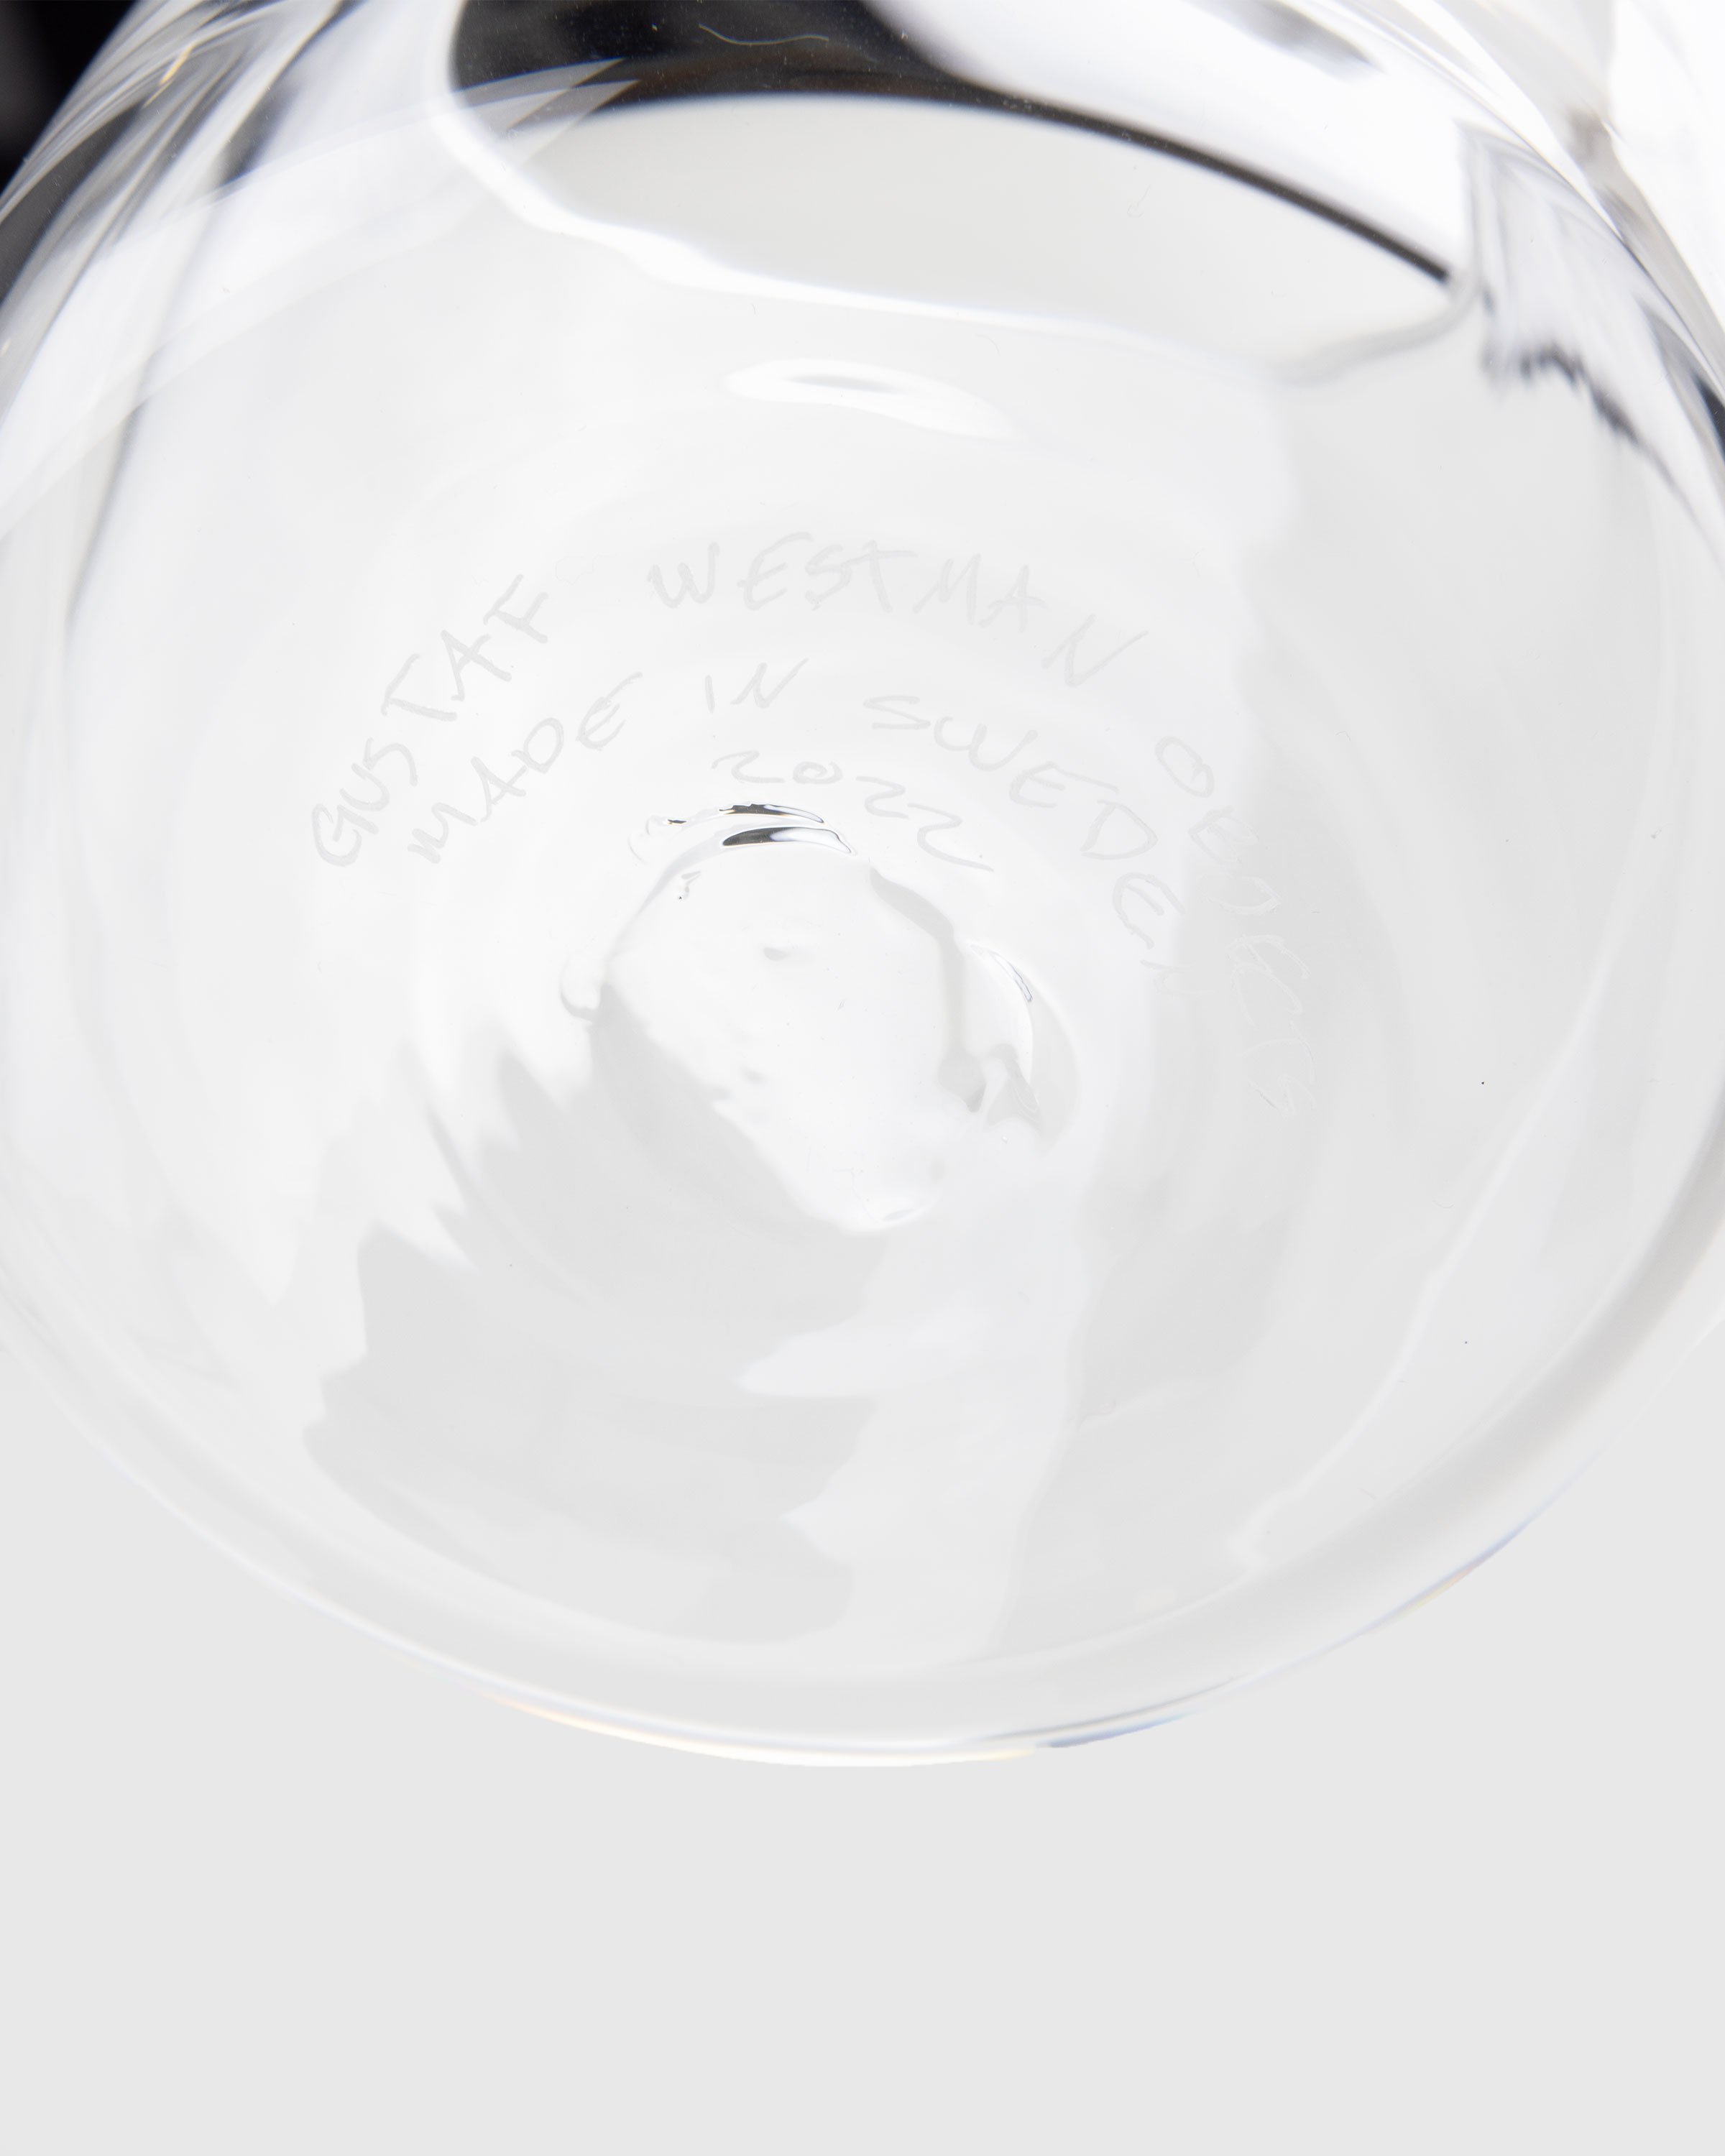 Gustaf Westman - Chunky Vase 0023 Transparent - Lifestyle - White - Image 3